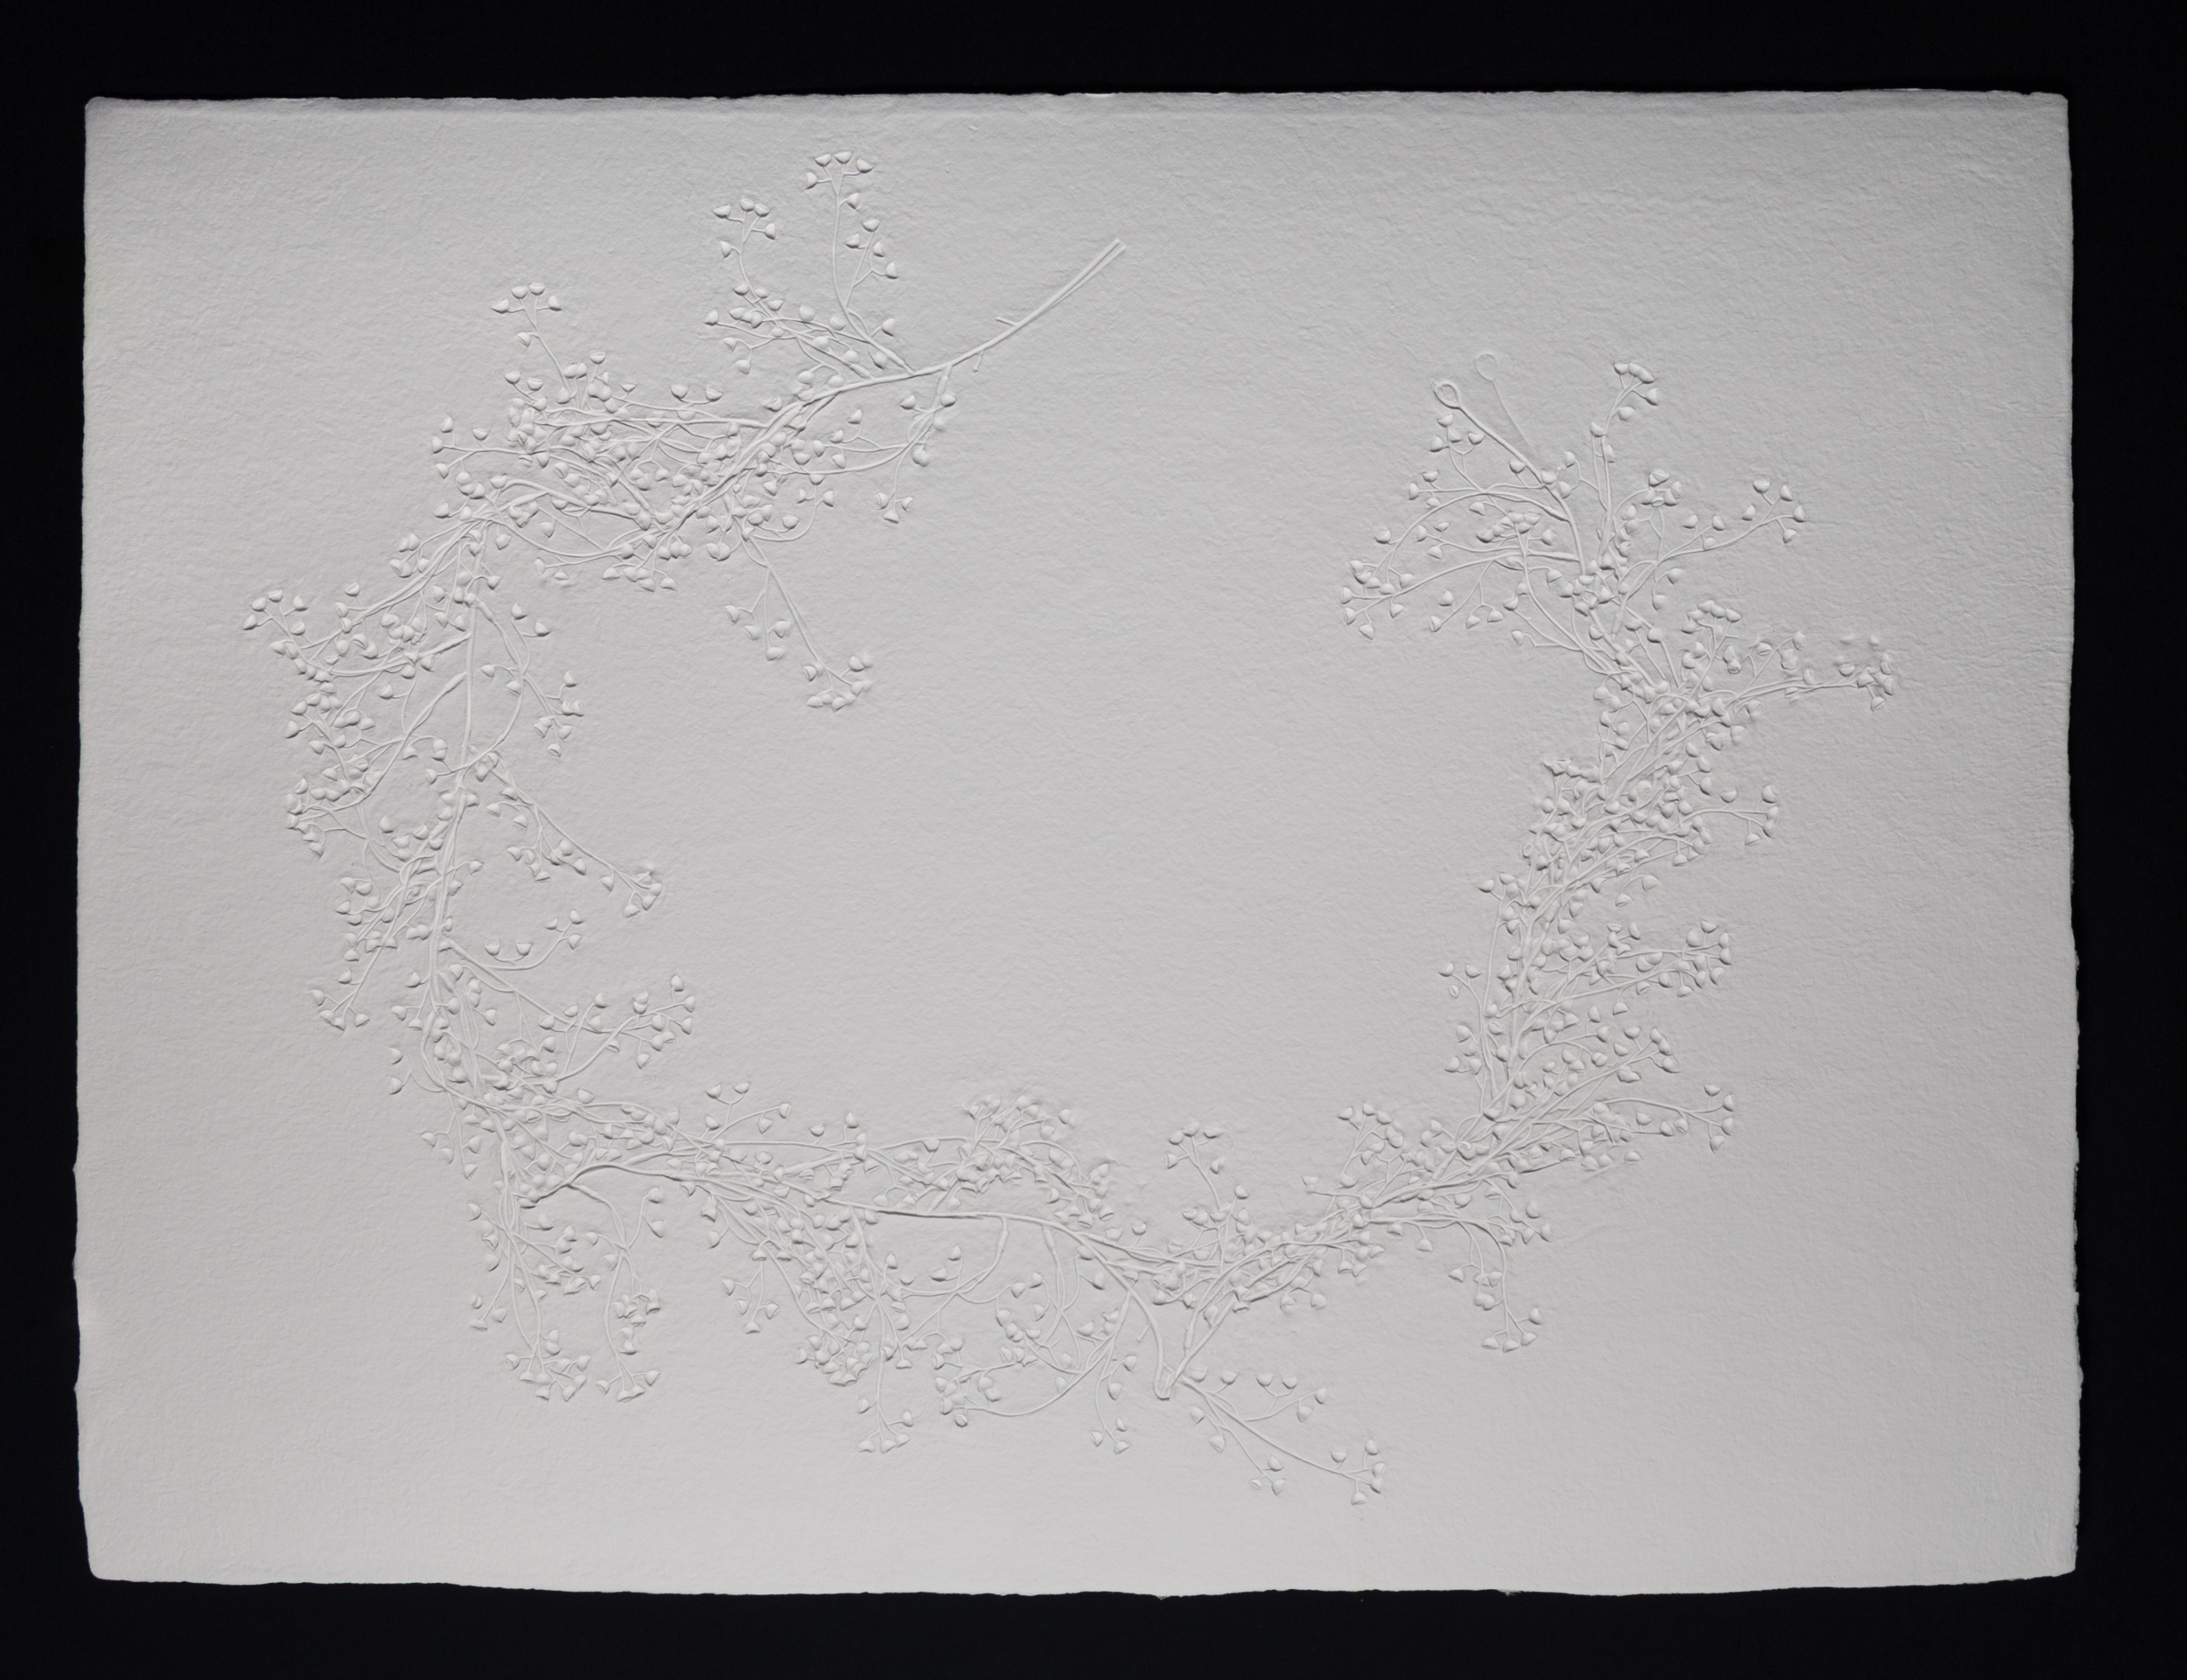   Spore Wreath , 2017, cast cotton paper, 30" x 40" 